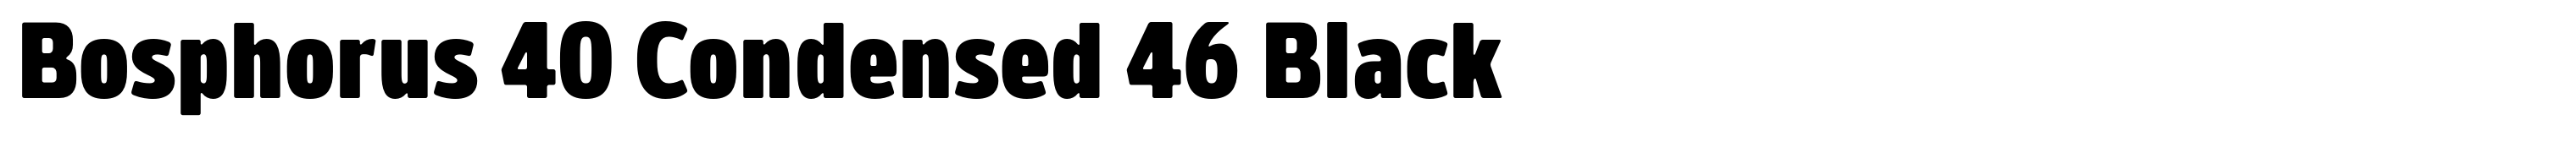 Bosphorus 40 Condensed 46 Black